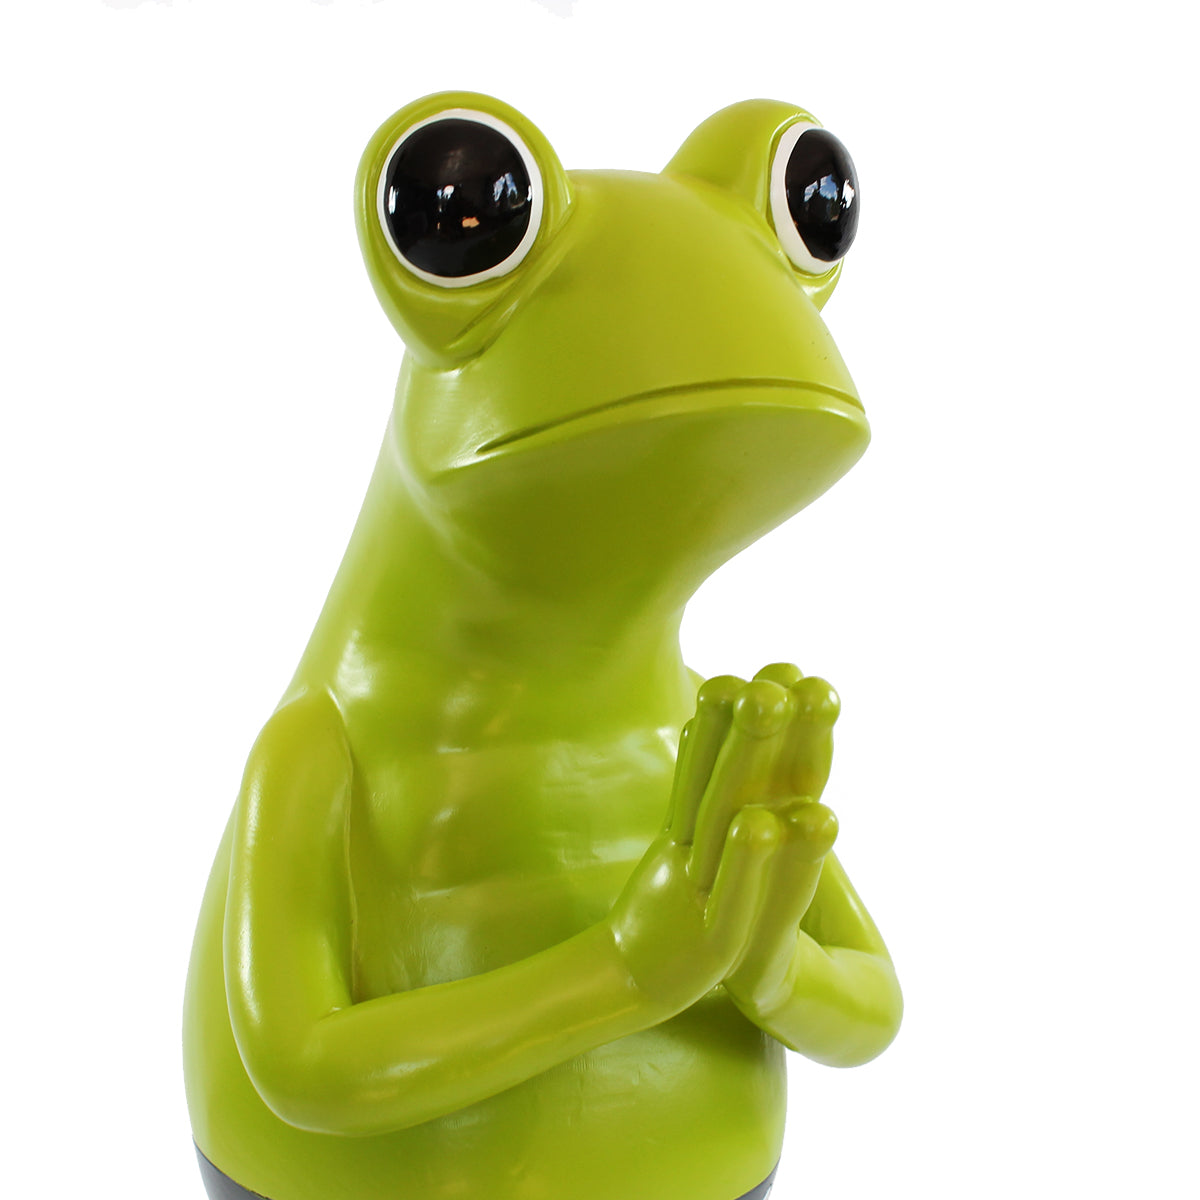 Frosch Dekofigur lustiger Badefrosch 43 cm grün Gartenfigur Frosch Froschfigur Pooldeko